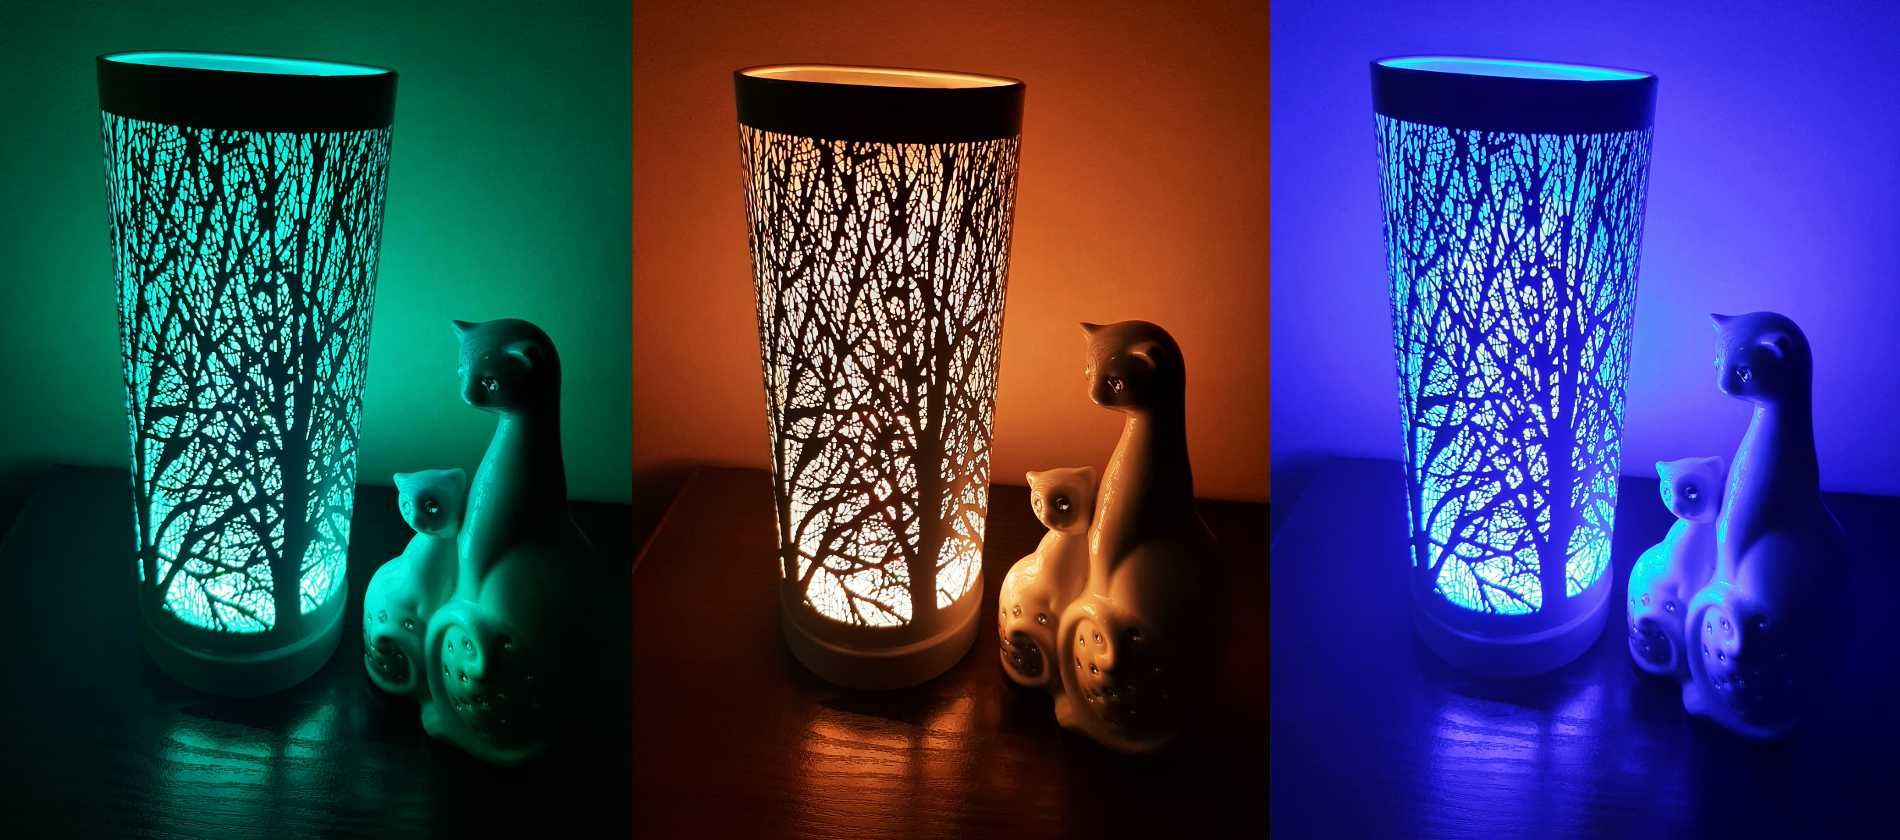 Lampa Zapachowa LED Zmieniająca Kolory (RÓŻNE WZORY)